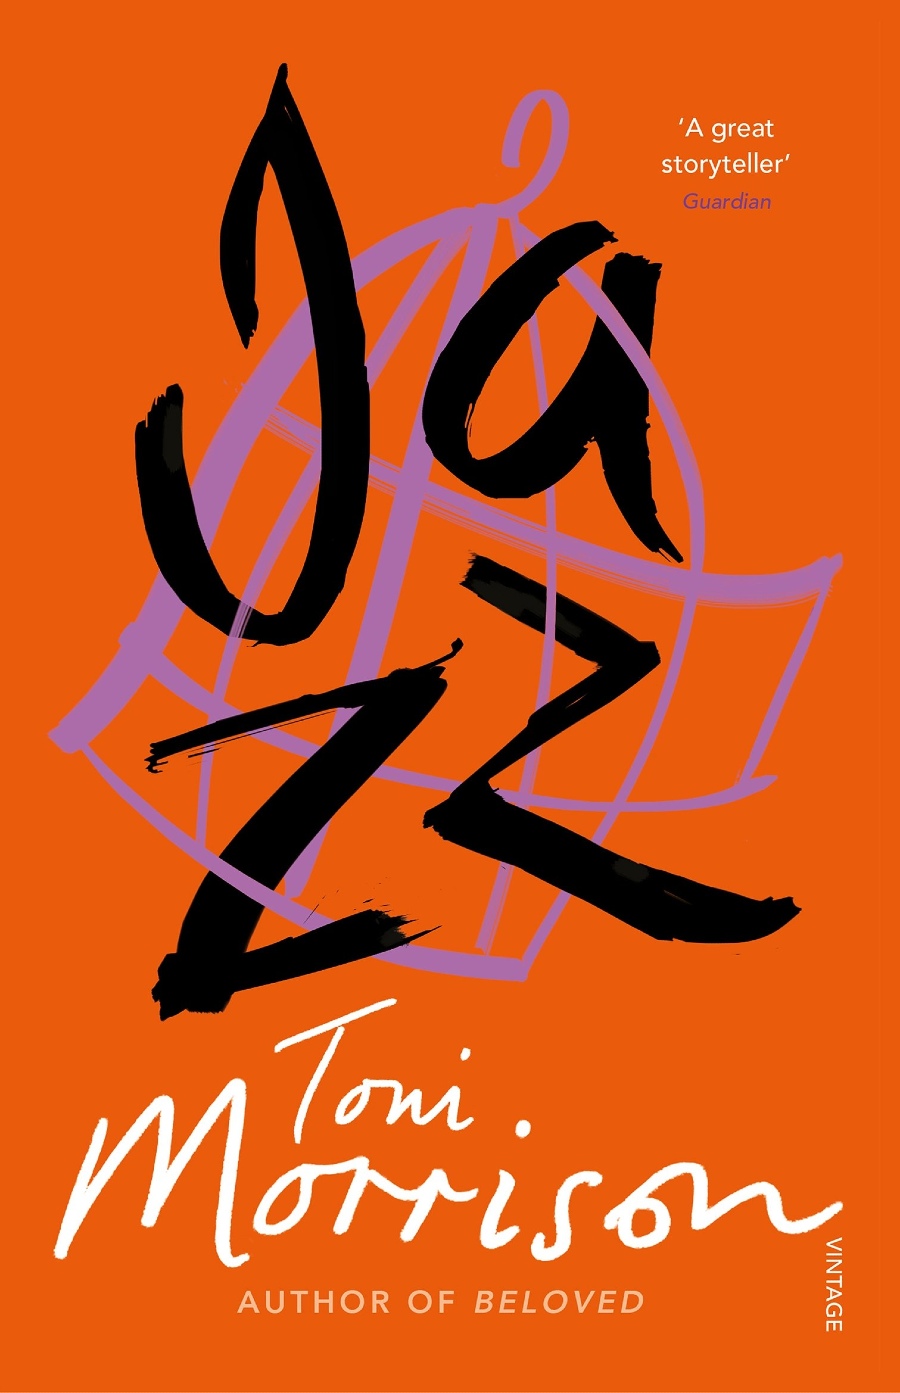 toni jazz